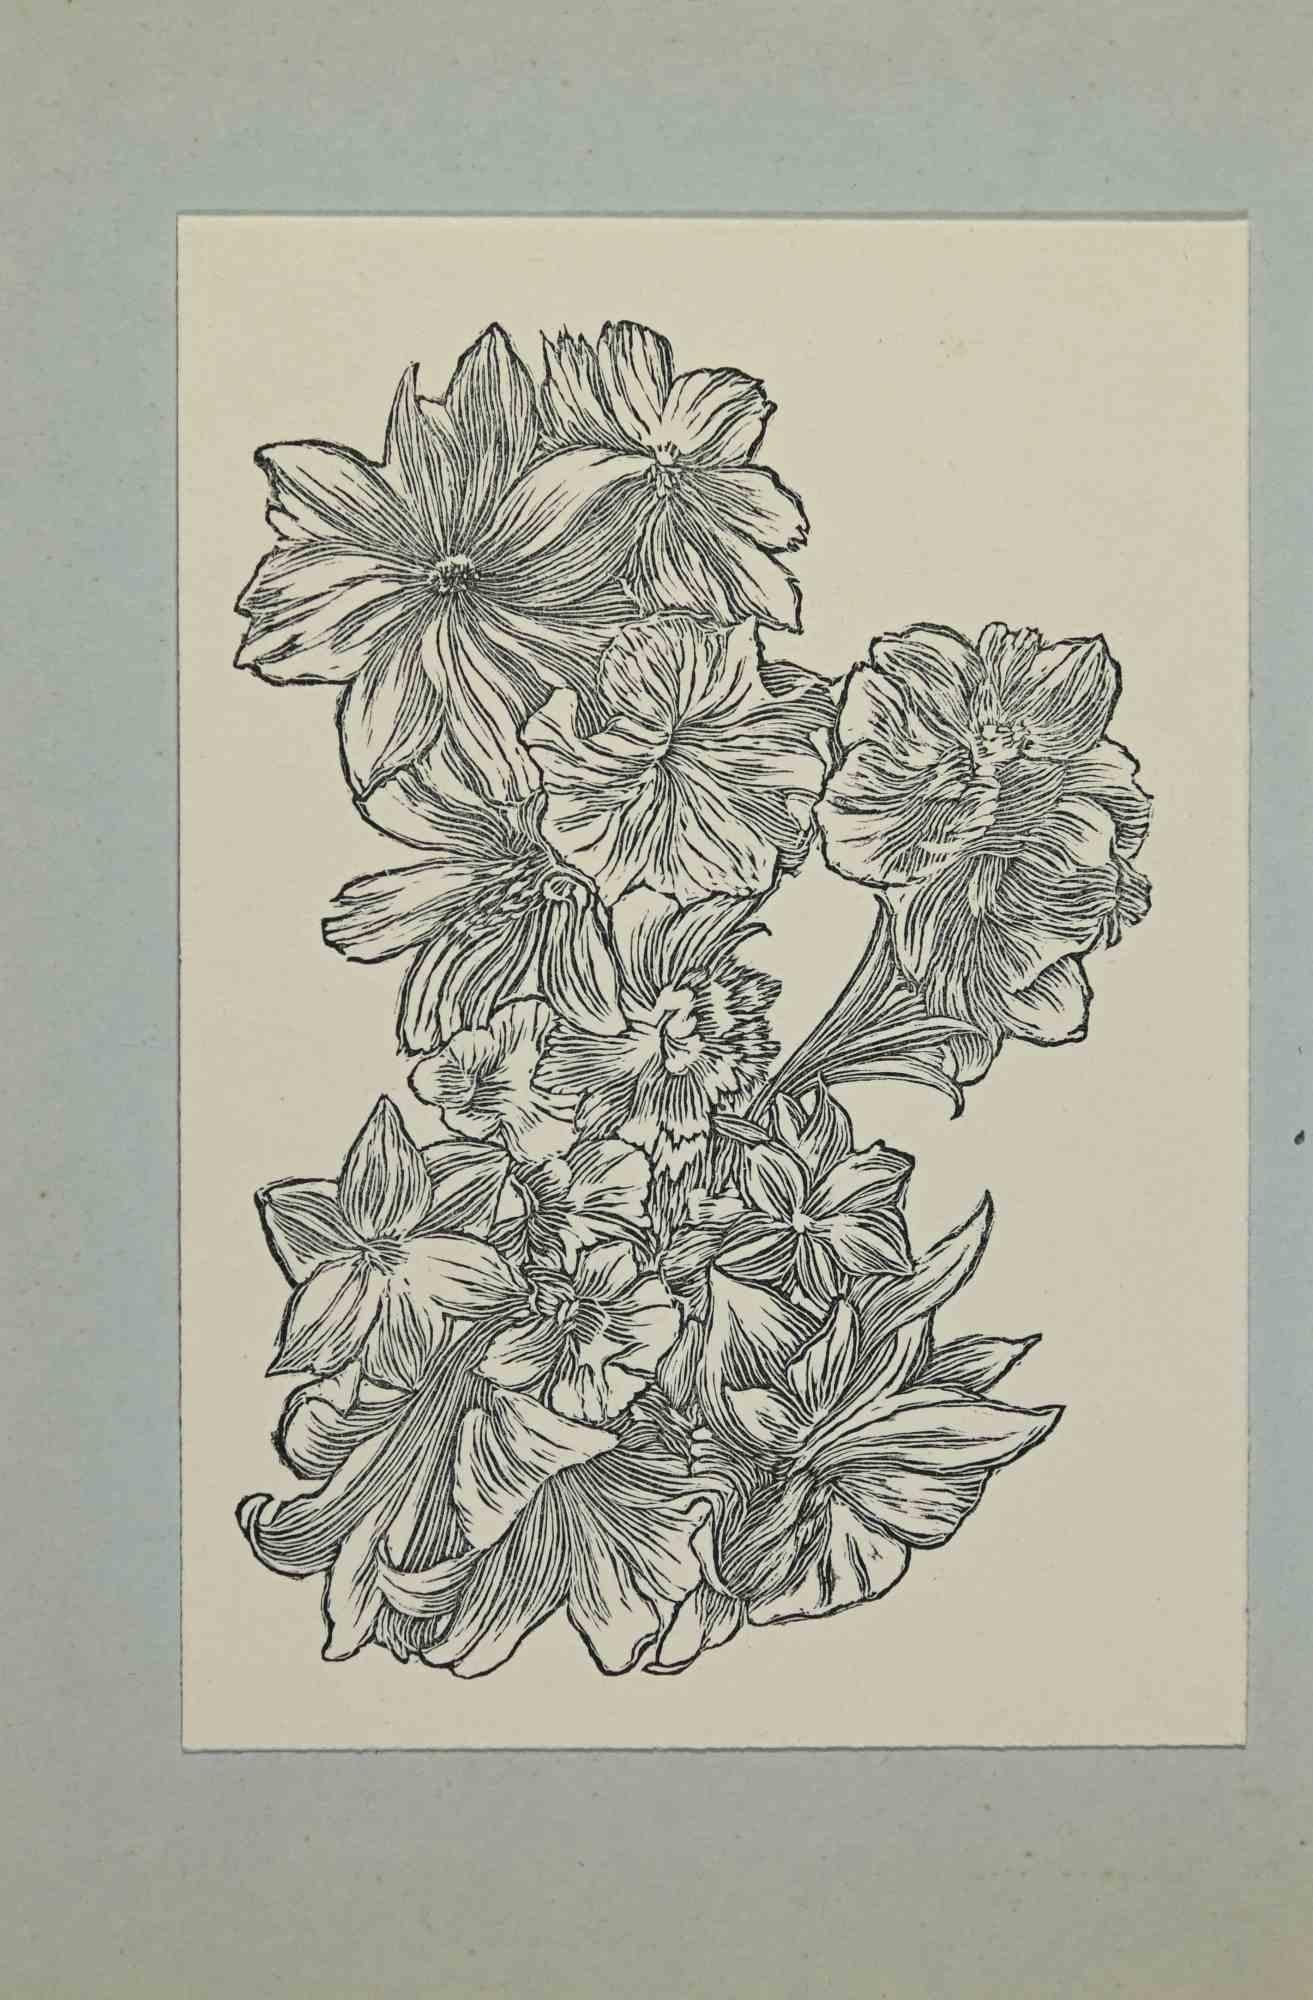 Ex-Libris - Blumen ist ein Kunstwerk, das 1947 von dem tschechischen Künstler Frantisek Kobliha (1877-1962) geschaffen wurde.

Holzschnitt B./W. Druck auf Elfenbeinpapier. Signiert auf der Platte und datiert auf der Rückseite. Das Werk ist auf